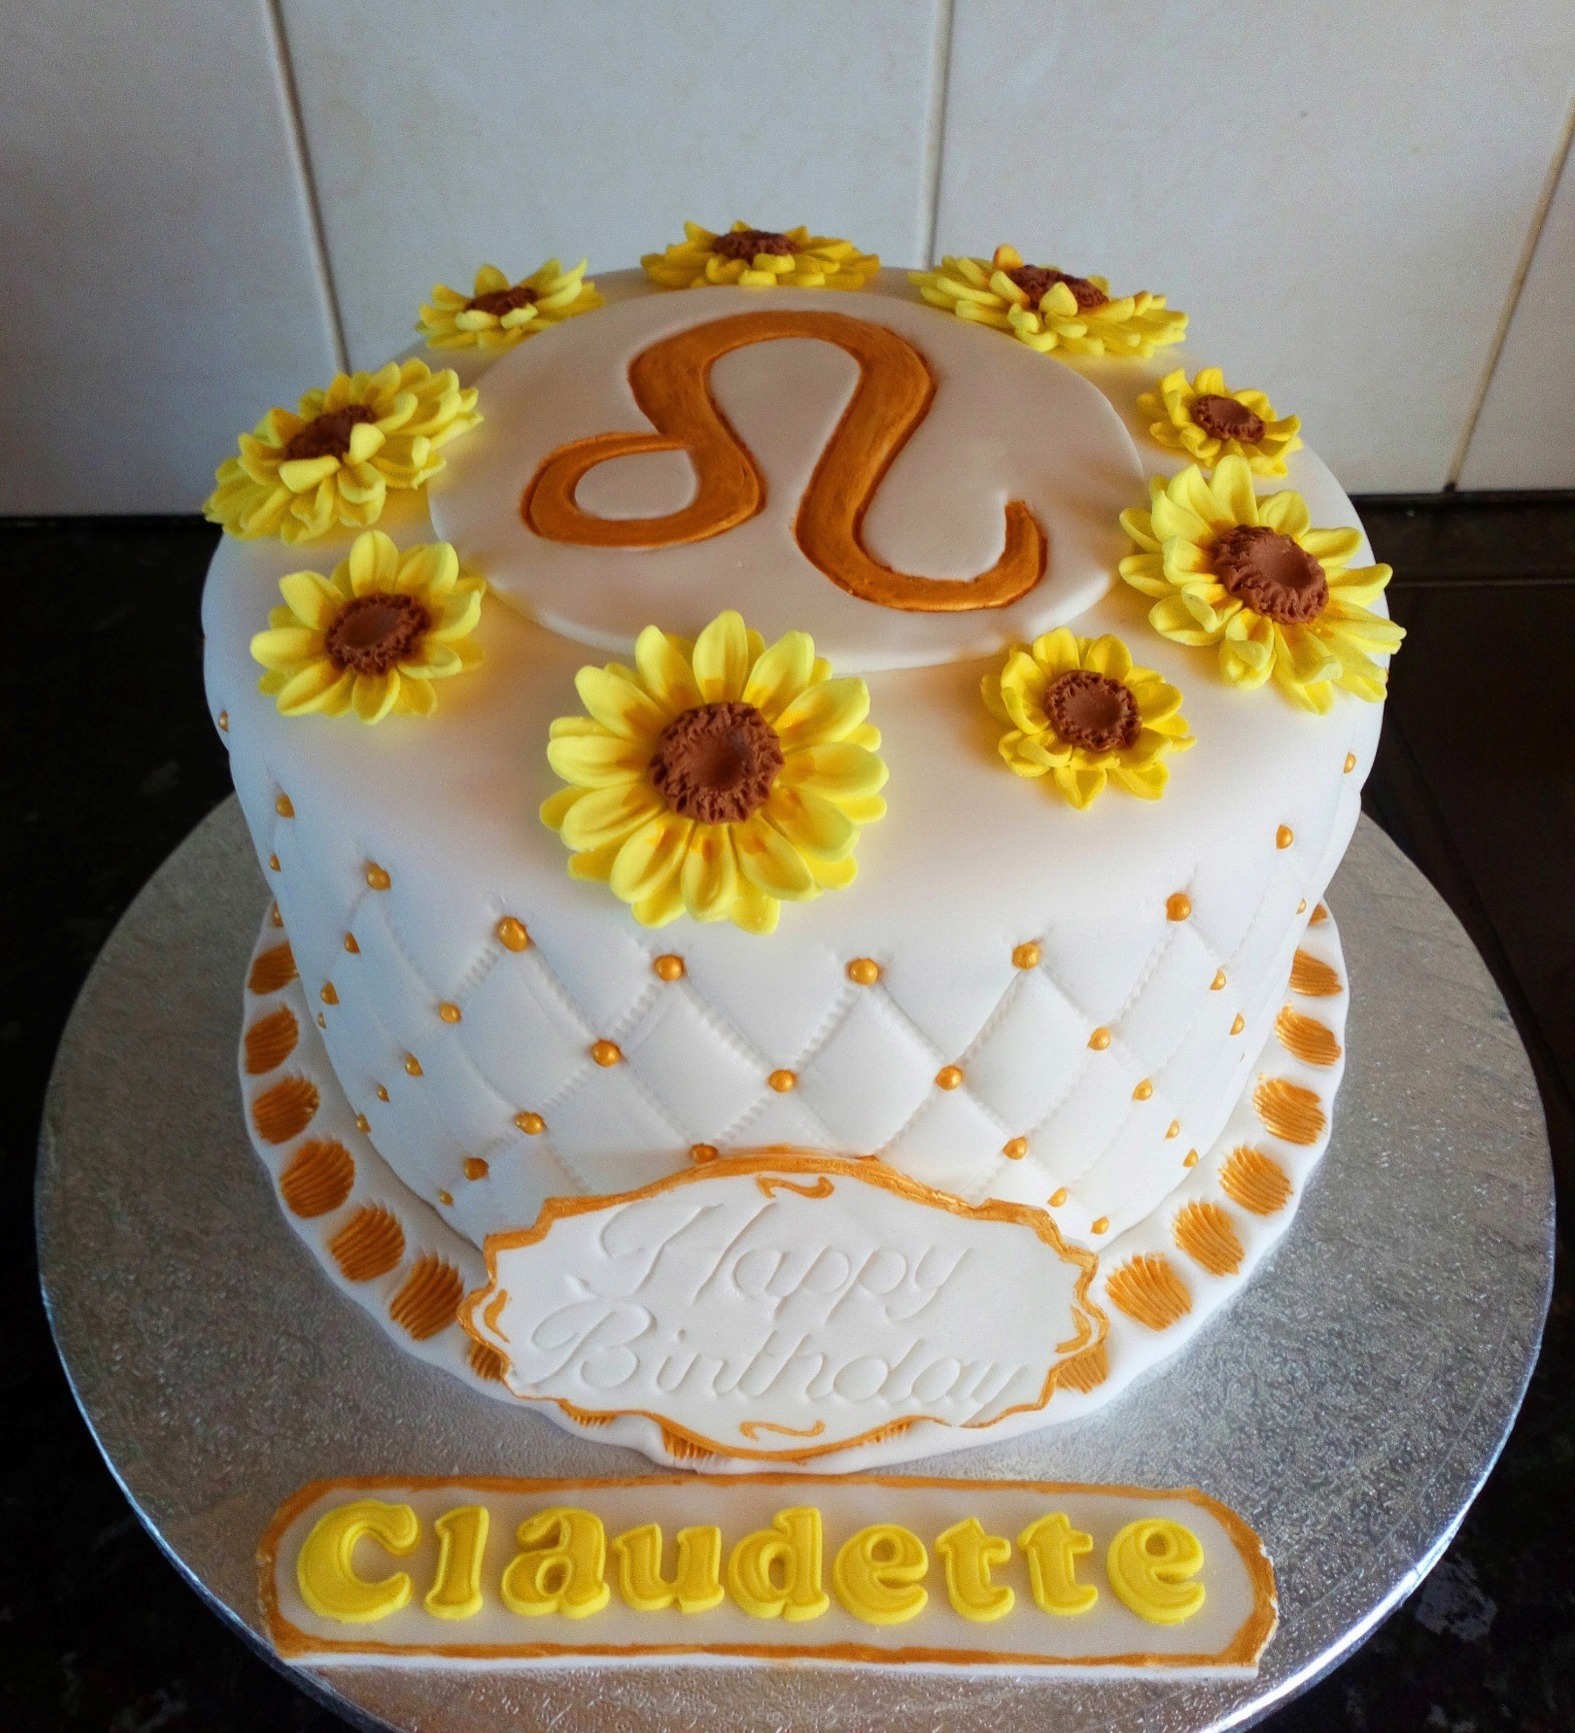 "Leo" zodiac inspired cake with sunflowers